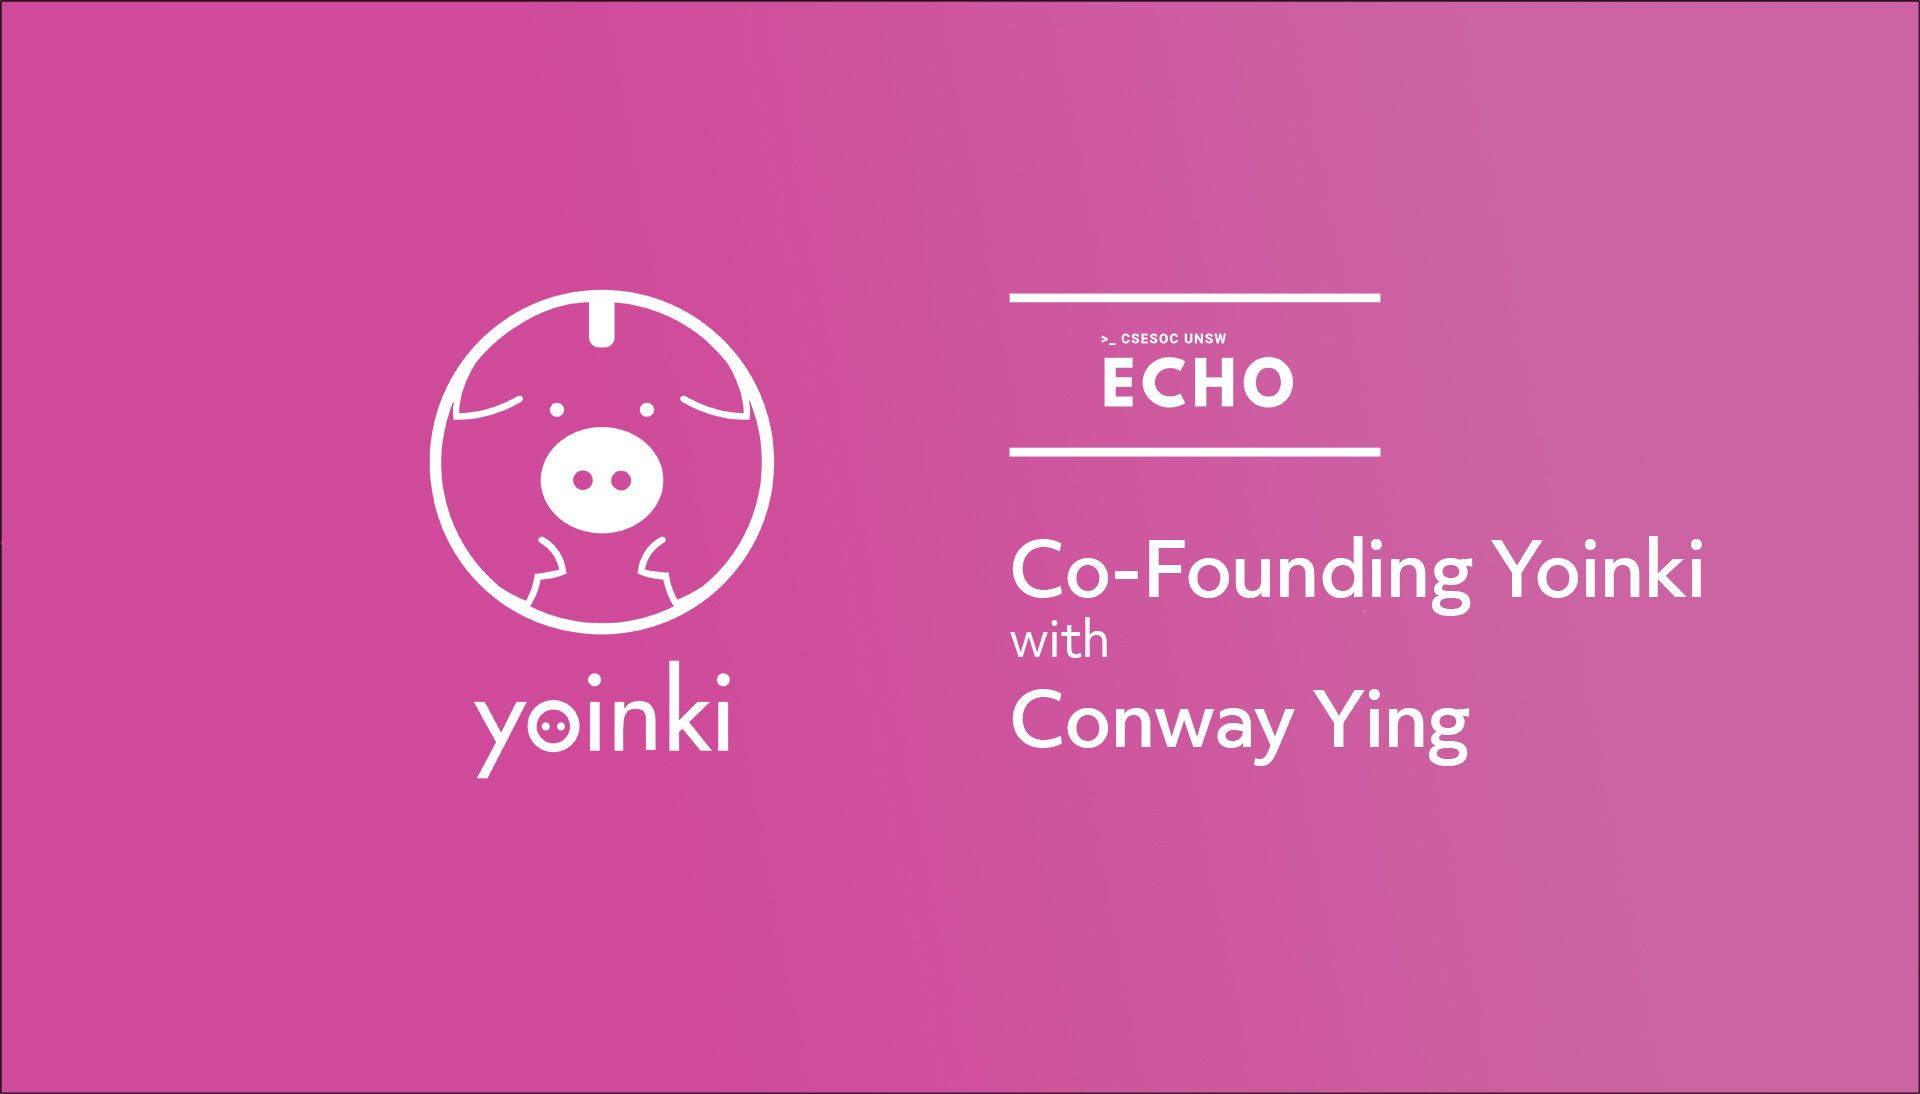 Co-founding Yoinki w/ Conway Ying